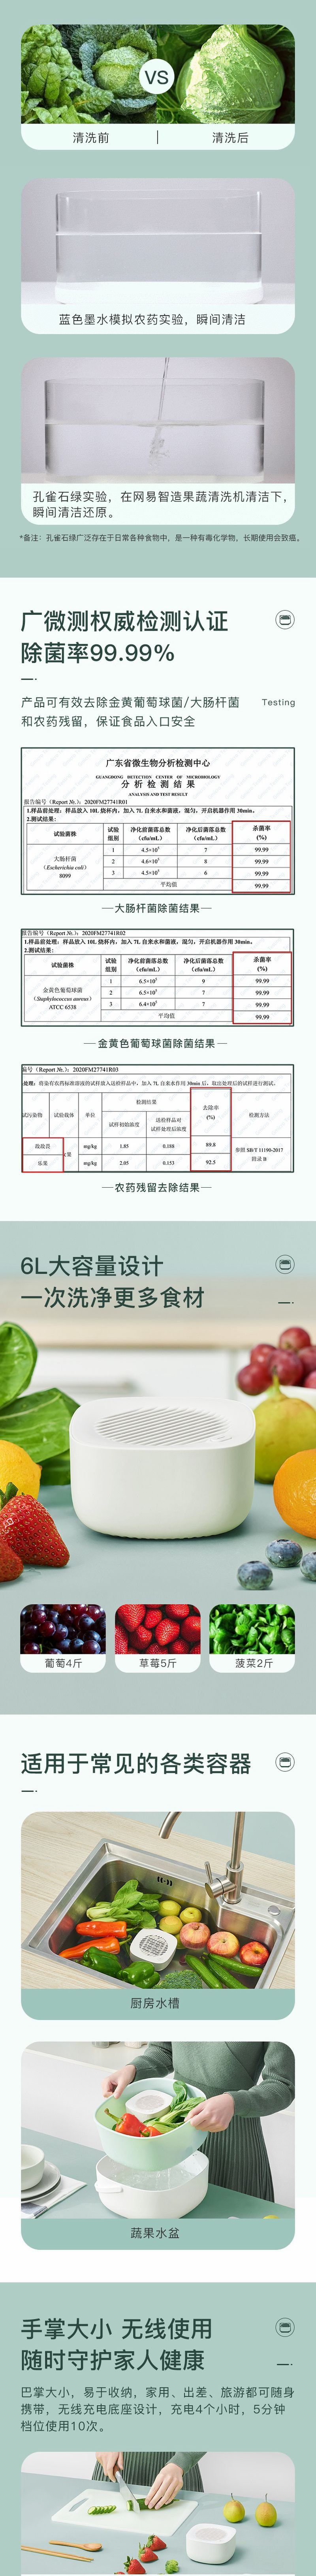 【香港DHL 5-7日达】网易智造 水果连皮放心吃 果蔬清洗机 瓷白色 